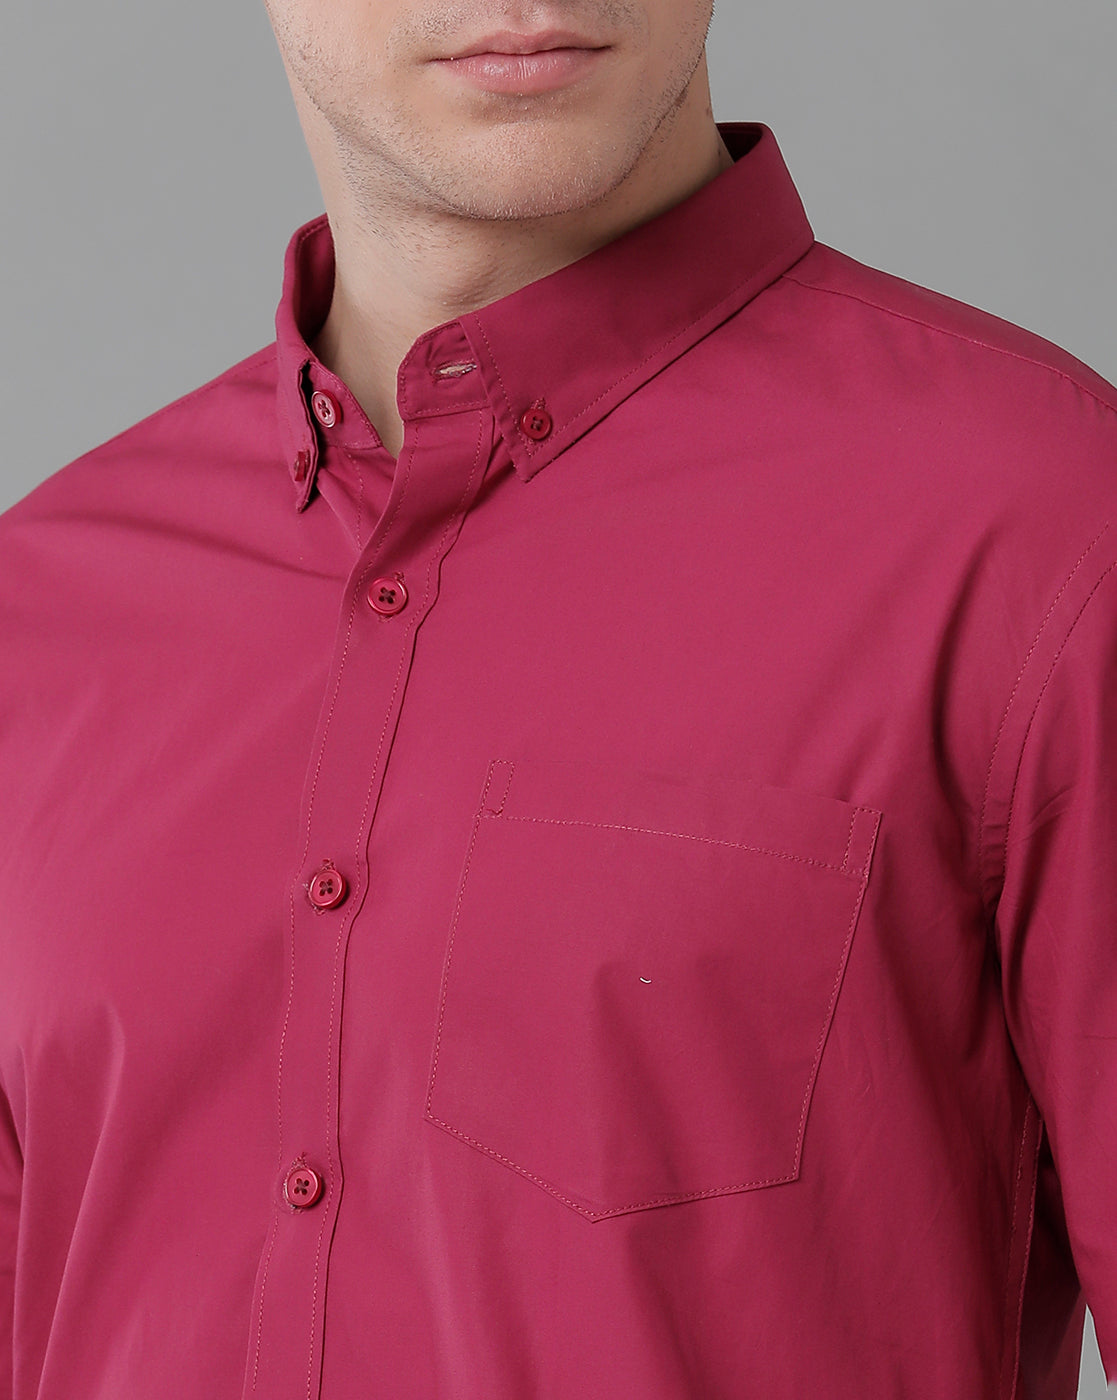 pink formal shirt